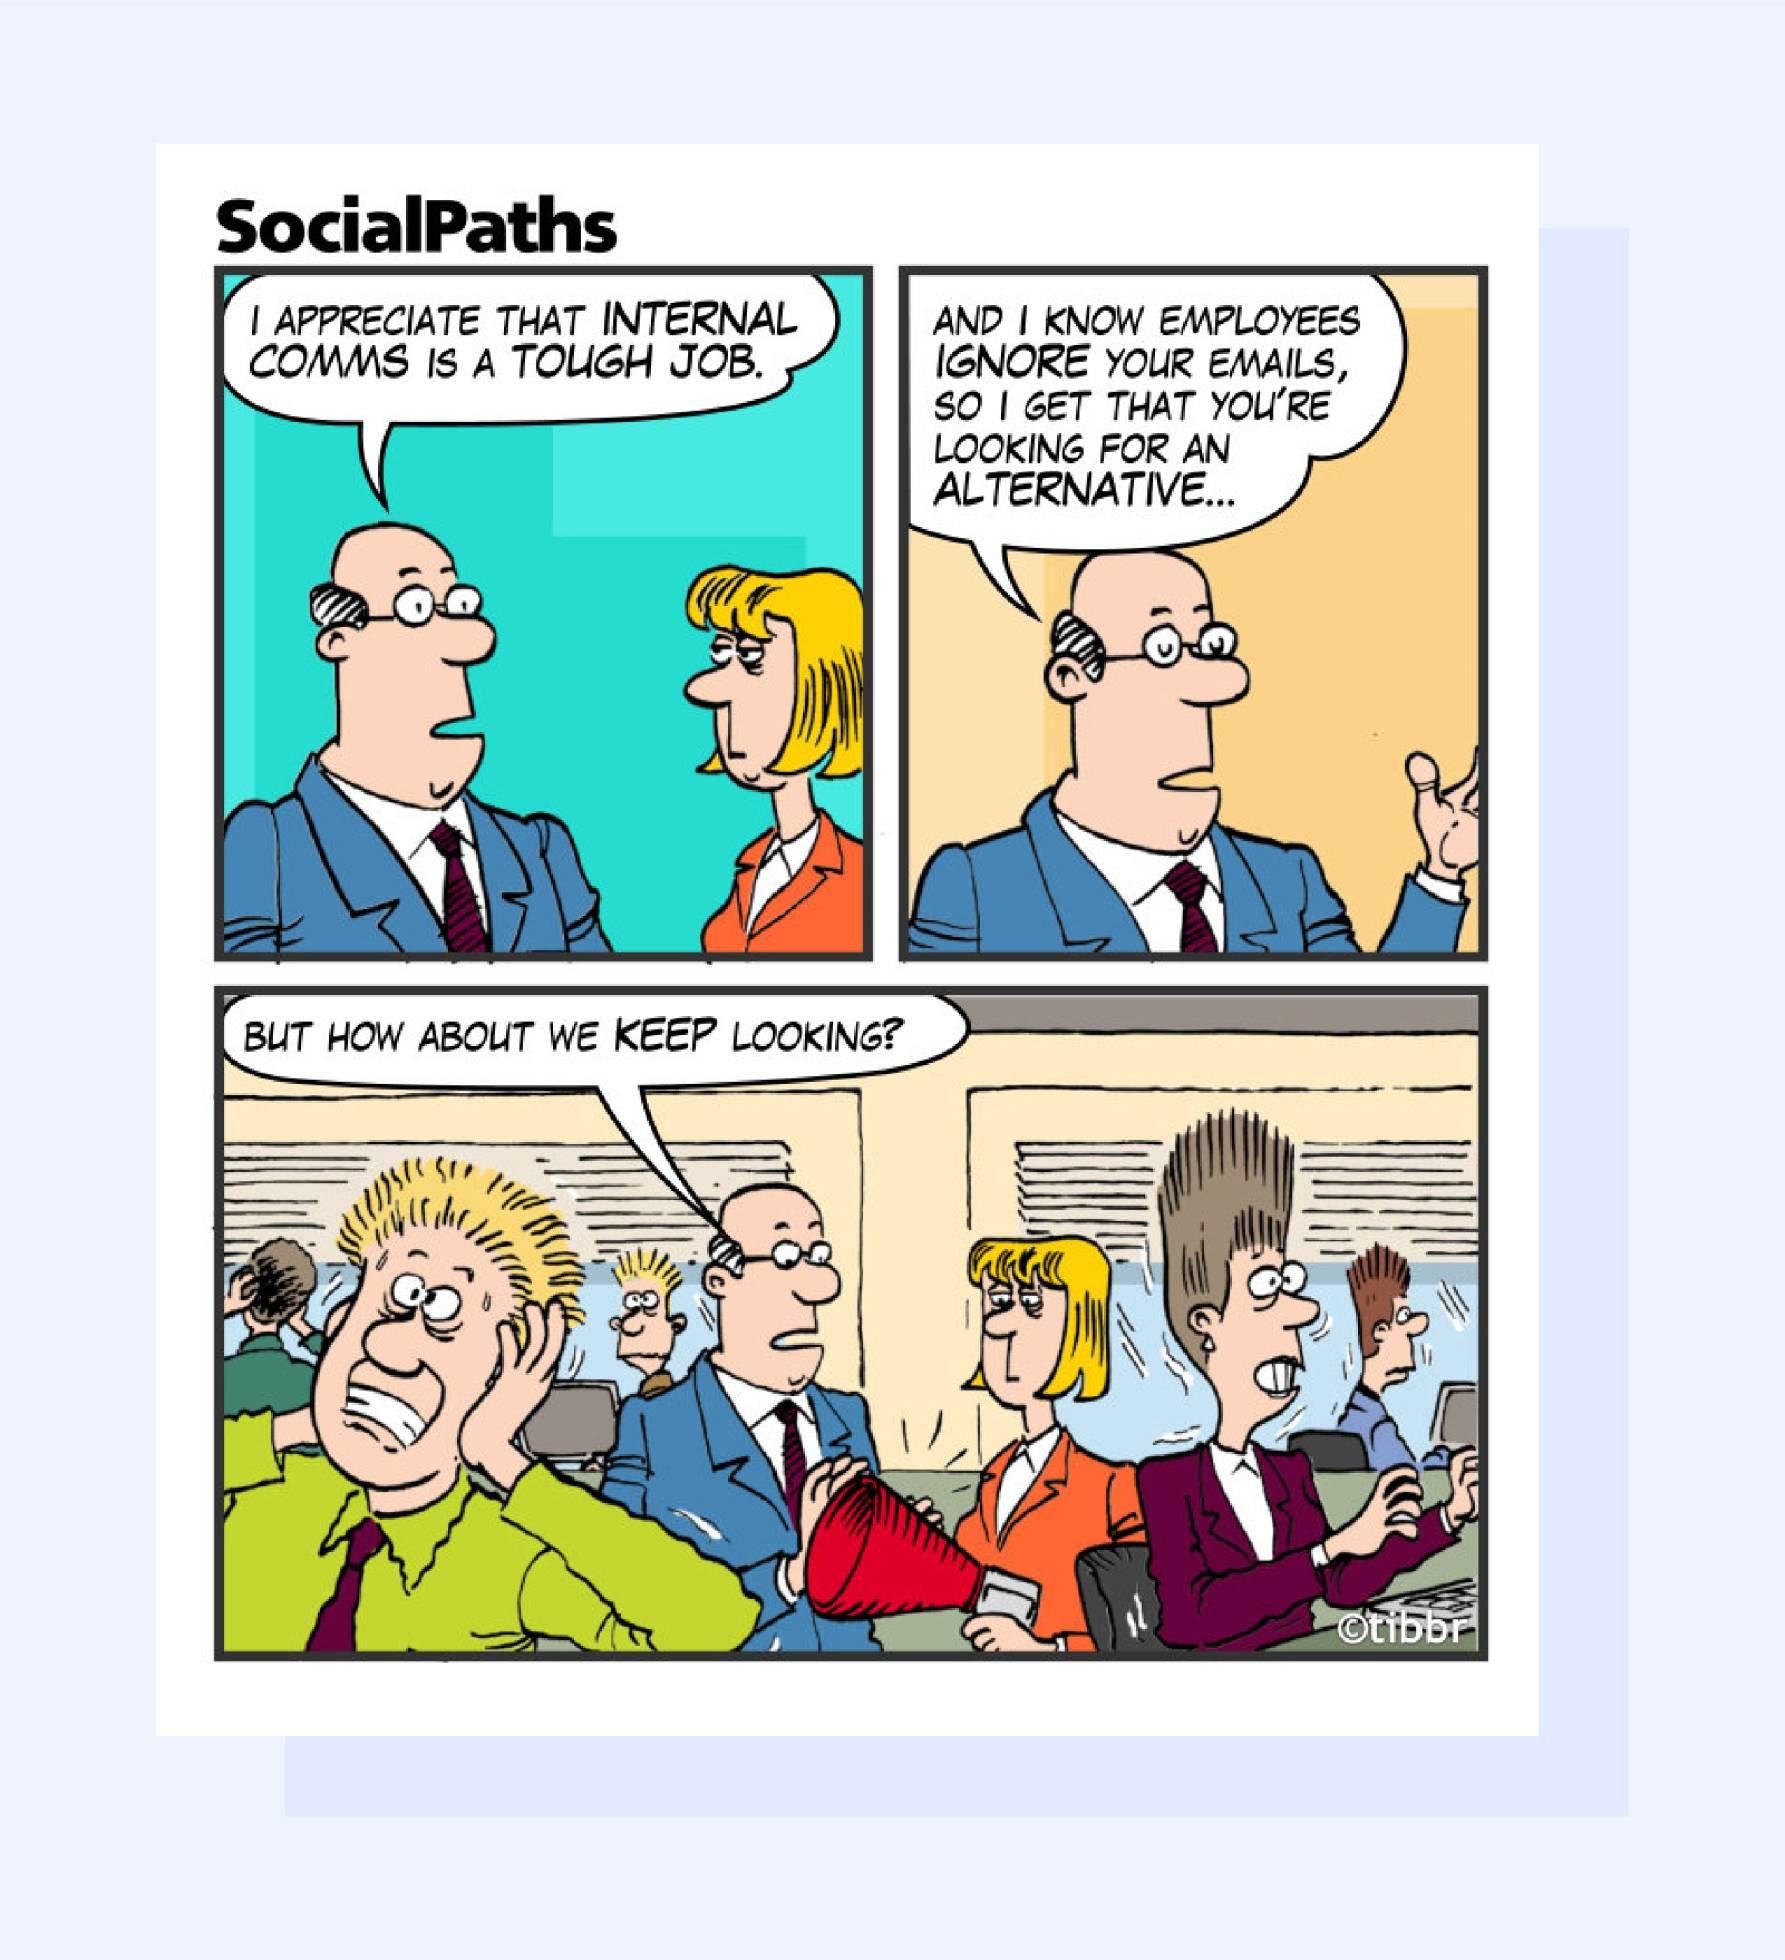 SocialPaths